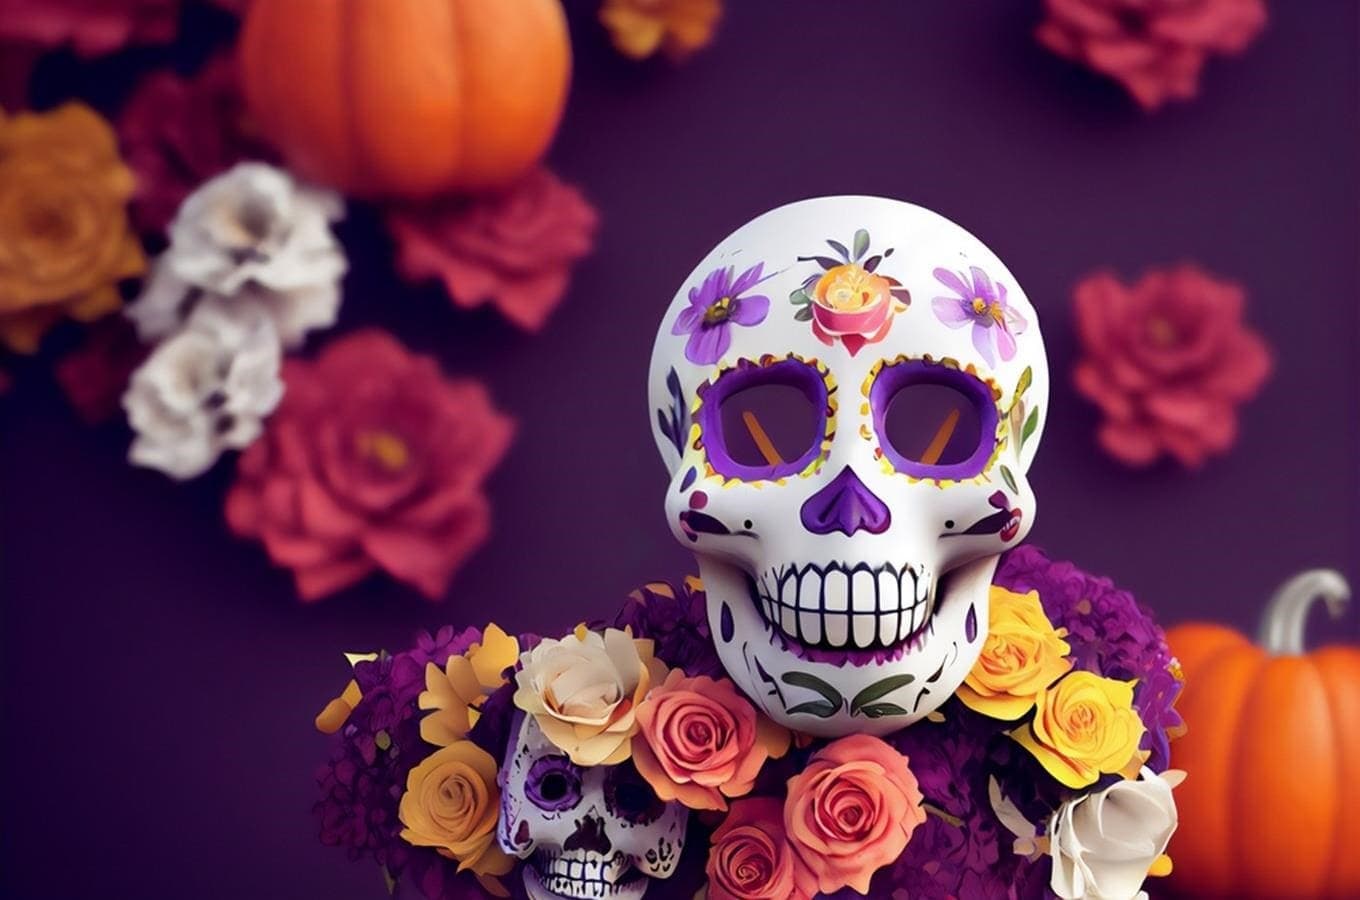 28 и 29 октября в Праге пройдет Мексиканский день мертвых Día de Muertos